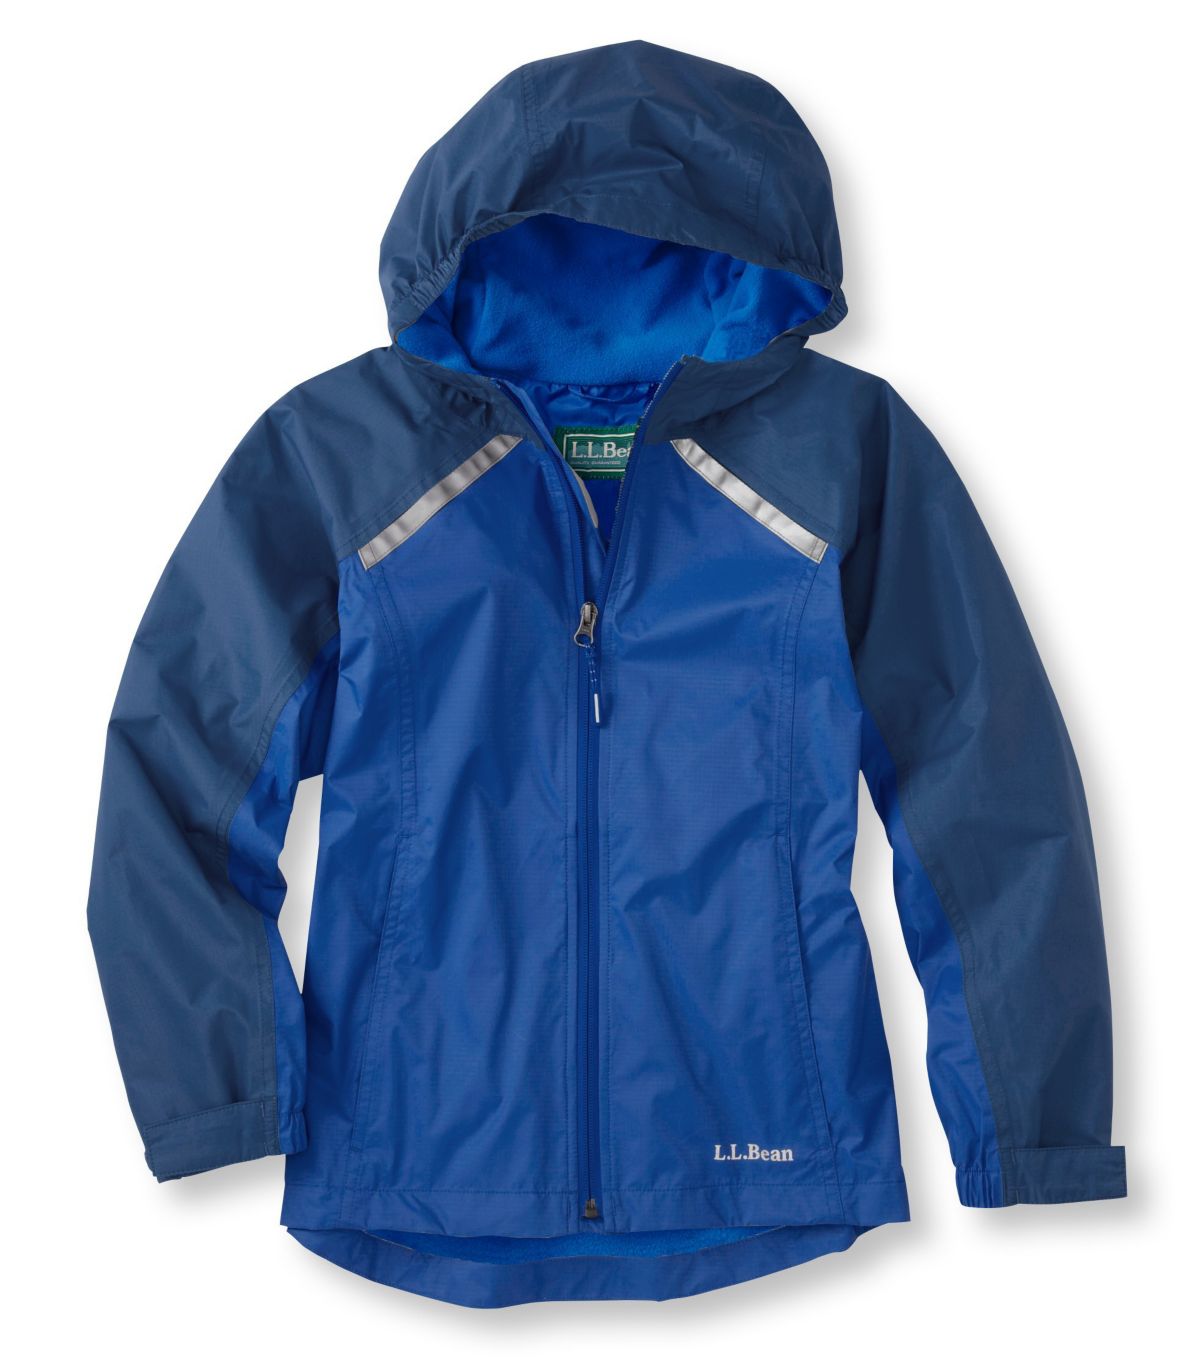 Kids' Trail Model Rain Jacket, Lined